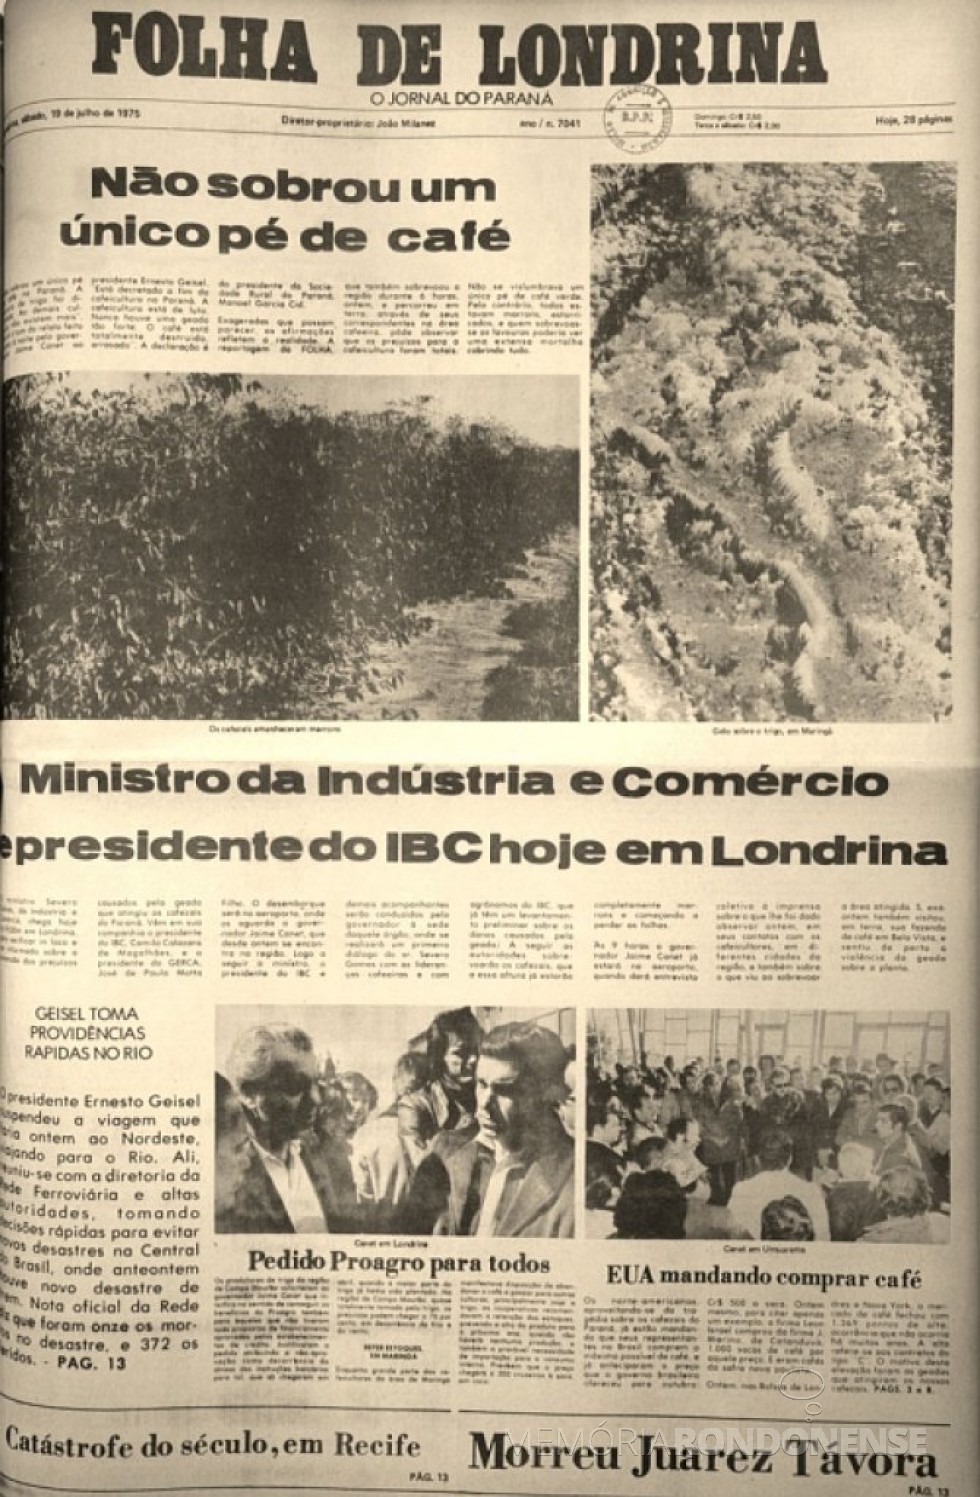 Folha de Londrina noticiando os prejuízos a cafeicultura paranaense, em julho de 1975. . 
Imagem: Acervo: http://www.jws.com.br - FOTO 4 - 